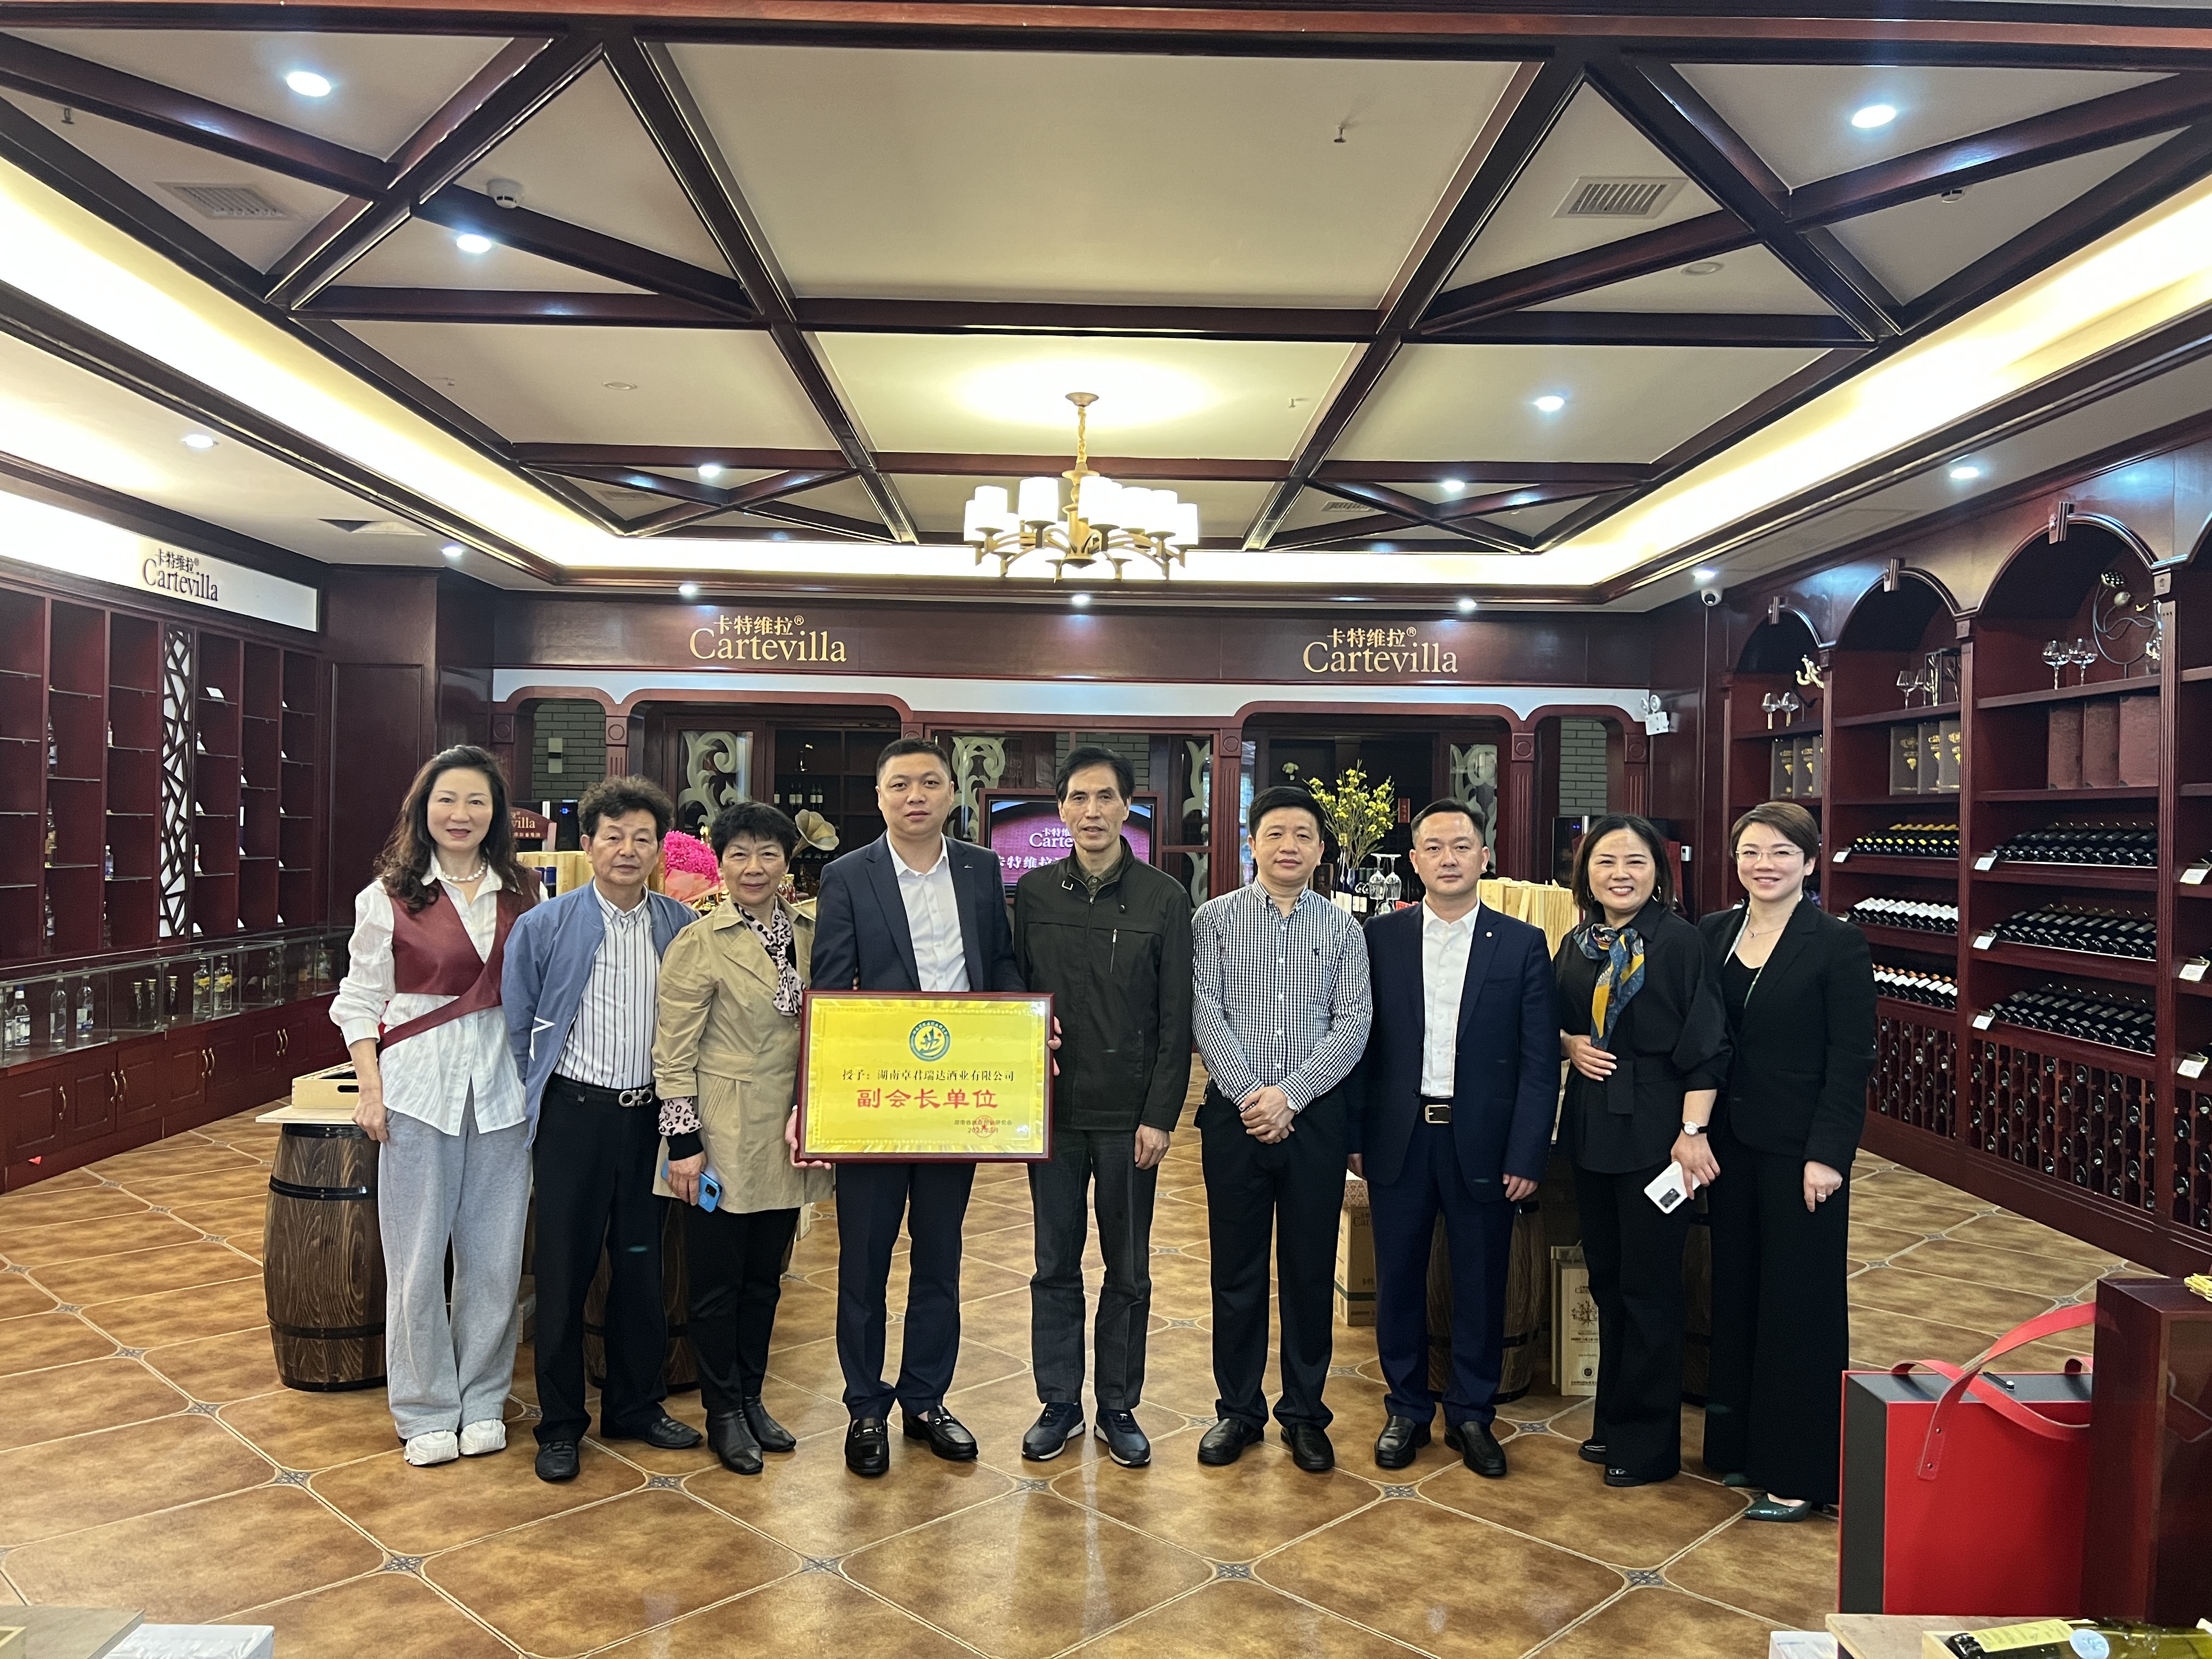  湖南省就业创业研究会为副会长单位湖南卓君瑞达酒业公司授牌